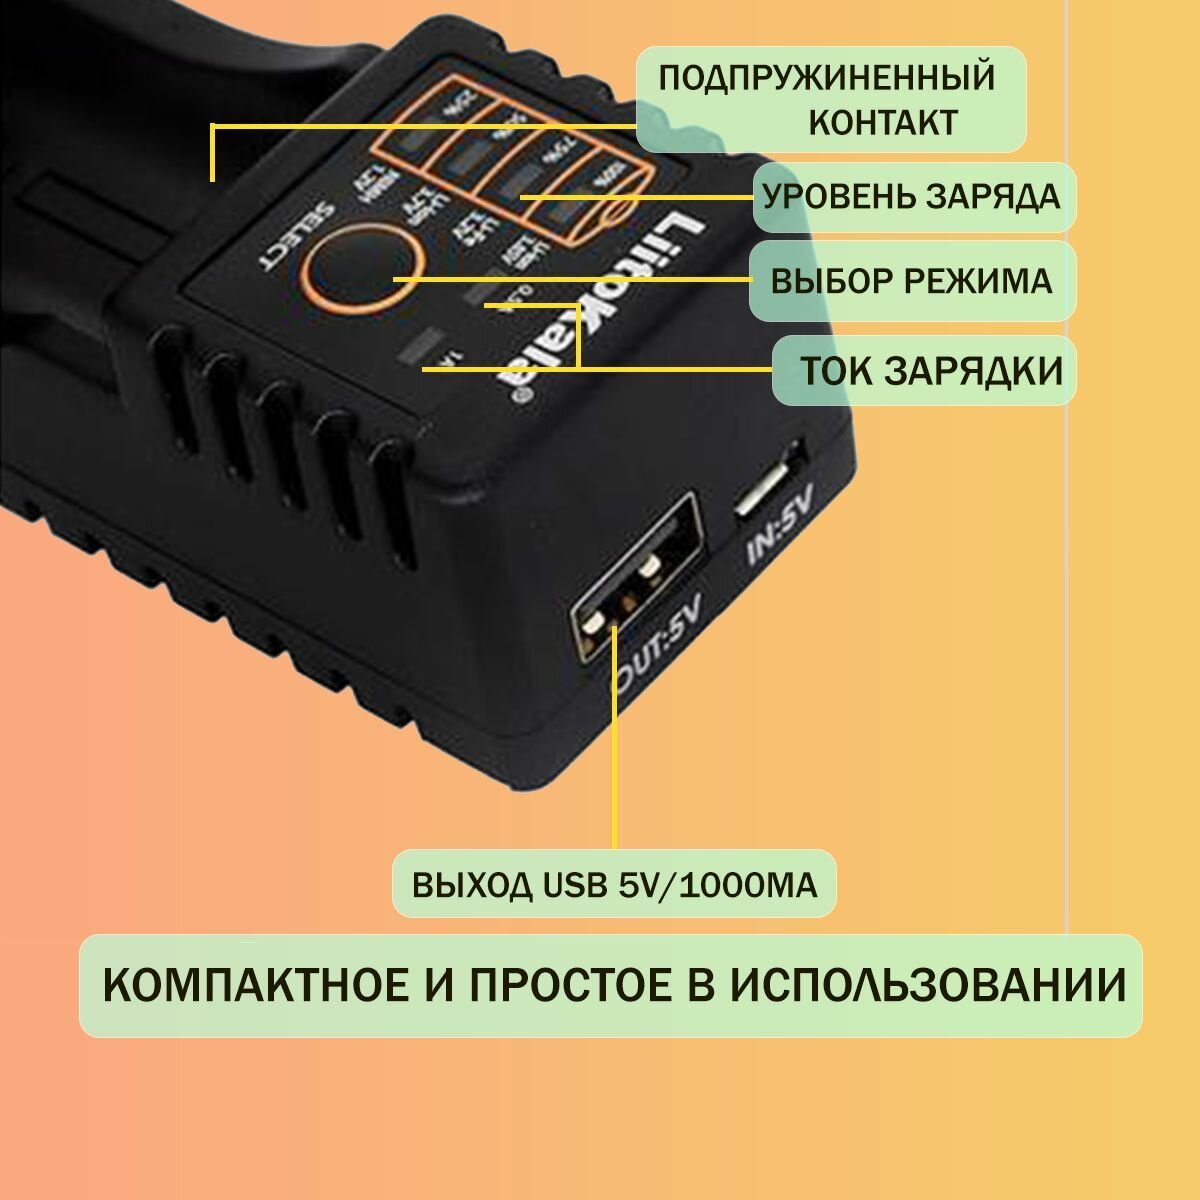 Зарядное устройство для аккумуляторных батареек liitoKala Lii-100 Слот 18650 26650 20700 18350 26700 AA AAА с функцией Повербанк